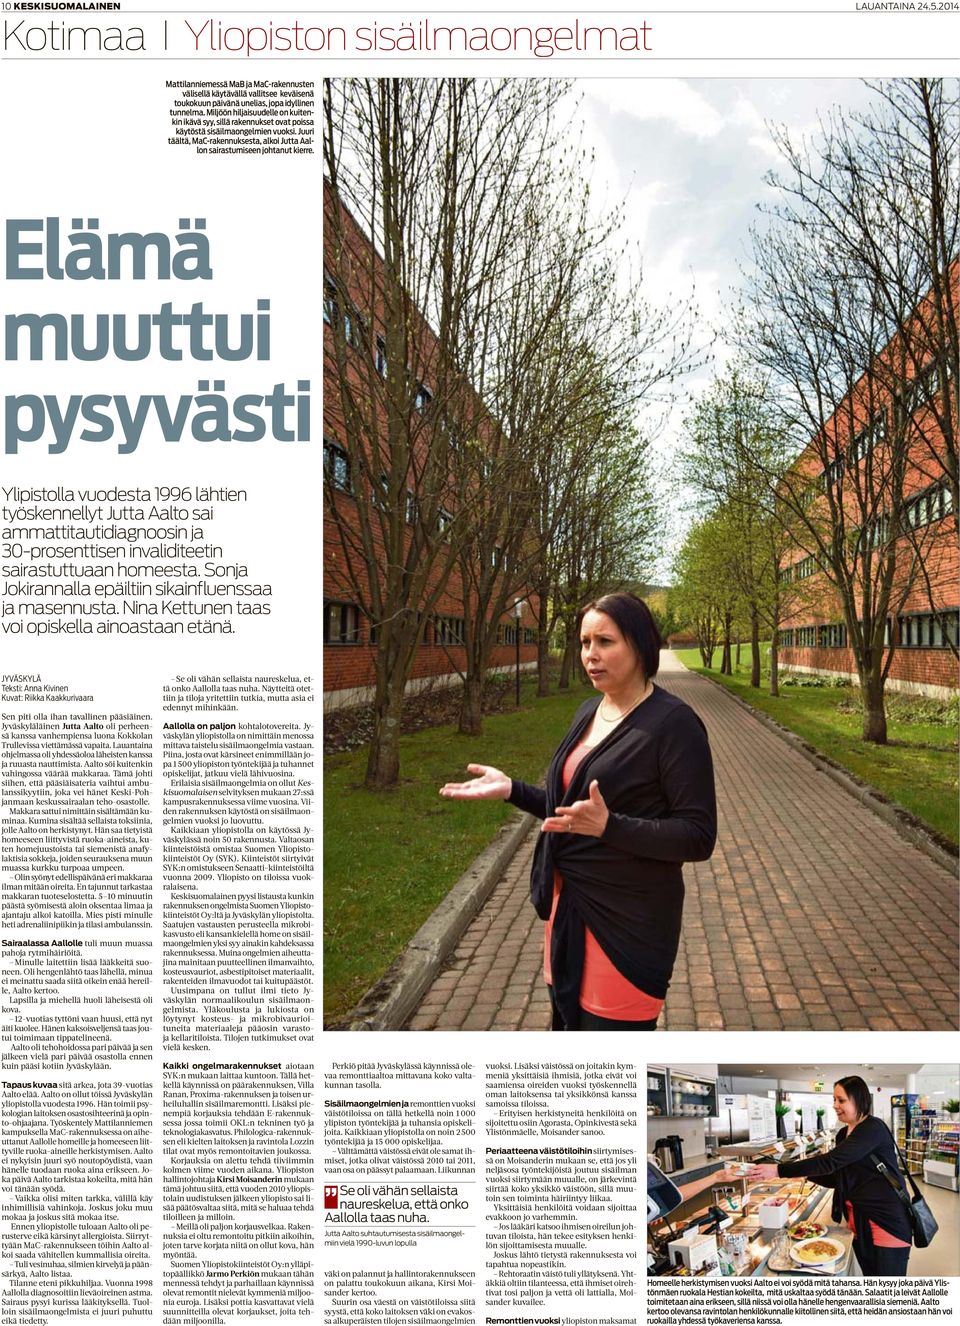 Elämä muuttui pysyvästi Ylipistolla vuodesta 1996 lähtien työskennellyt Jutta Aalto sai ammattitautidiagnoosin ja 30-prosenttisen invaliditeetin sairastuttuaan homeesta.